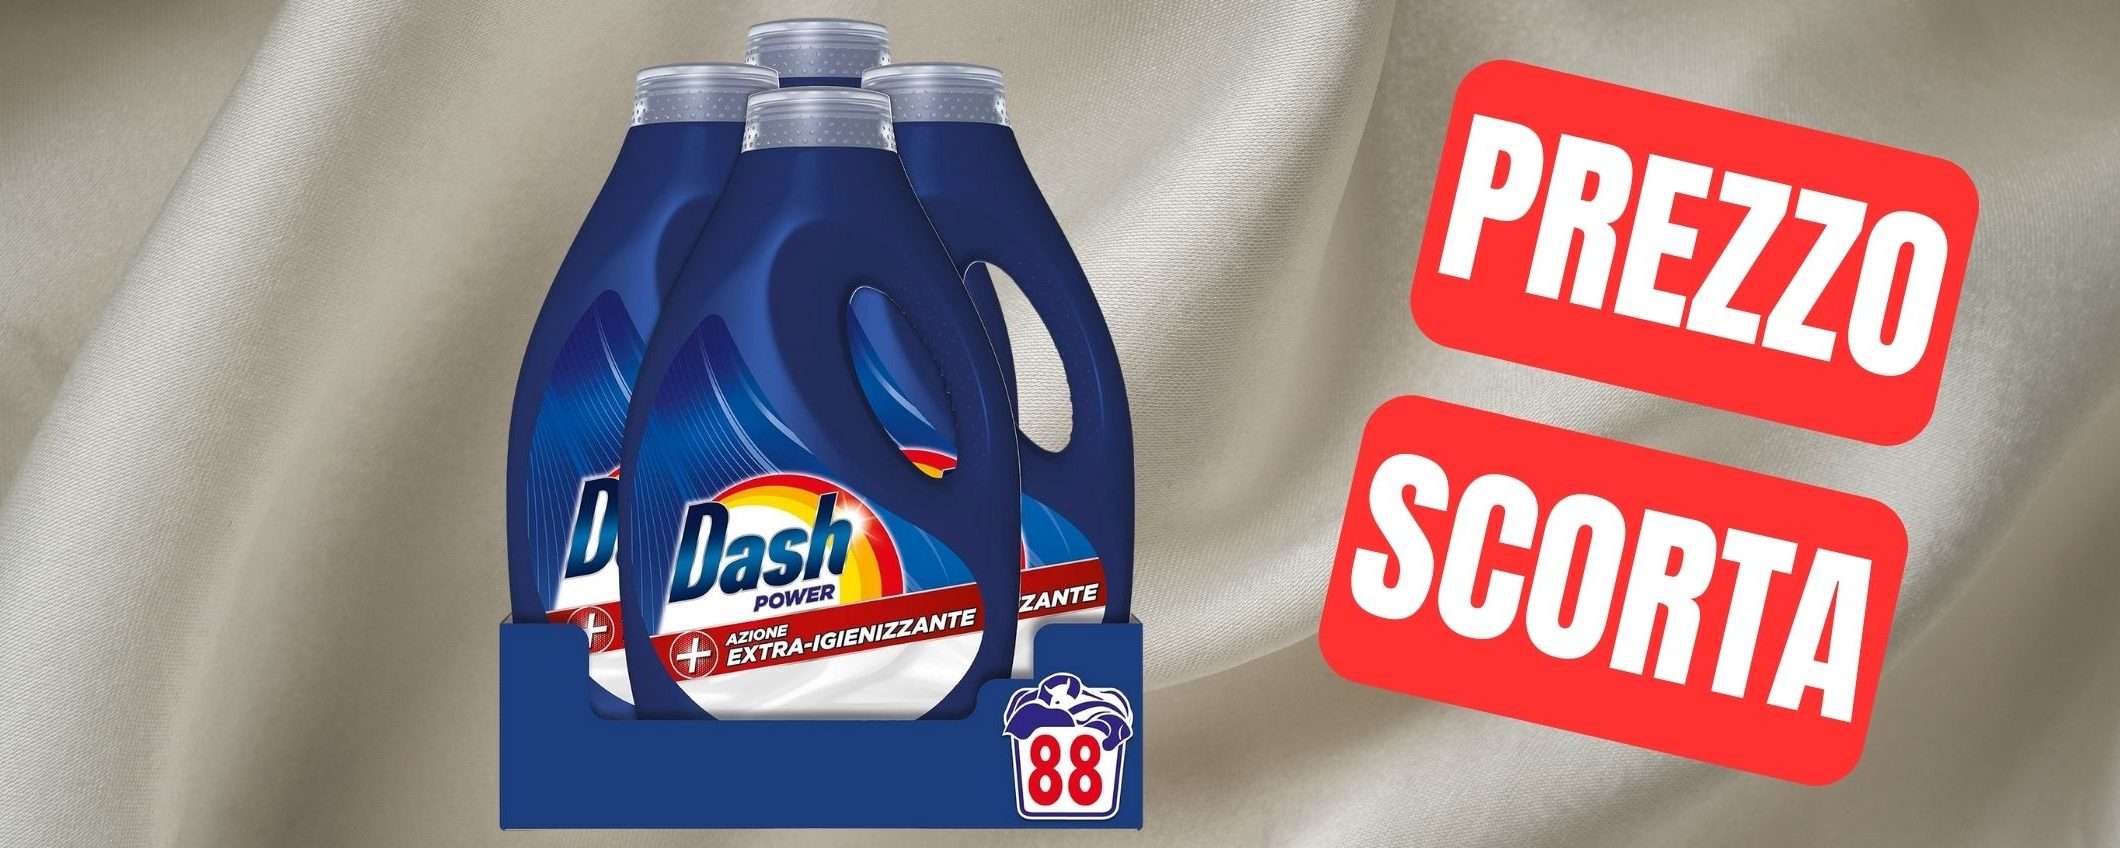 Detersivo Dash Power: 4 bottiglie in offerta a PREZZO SCORTA